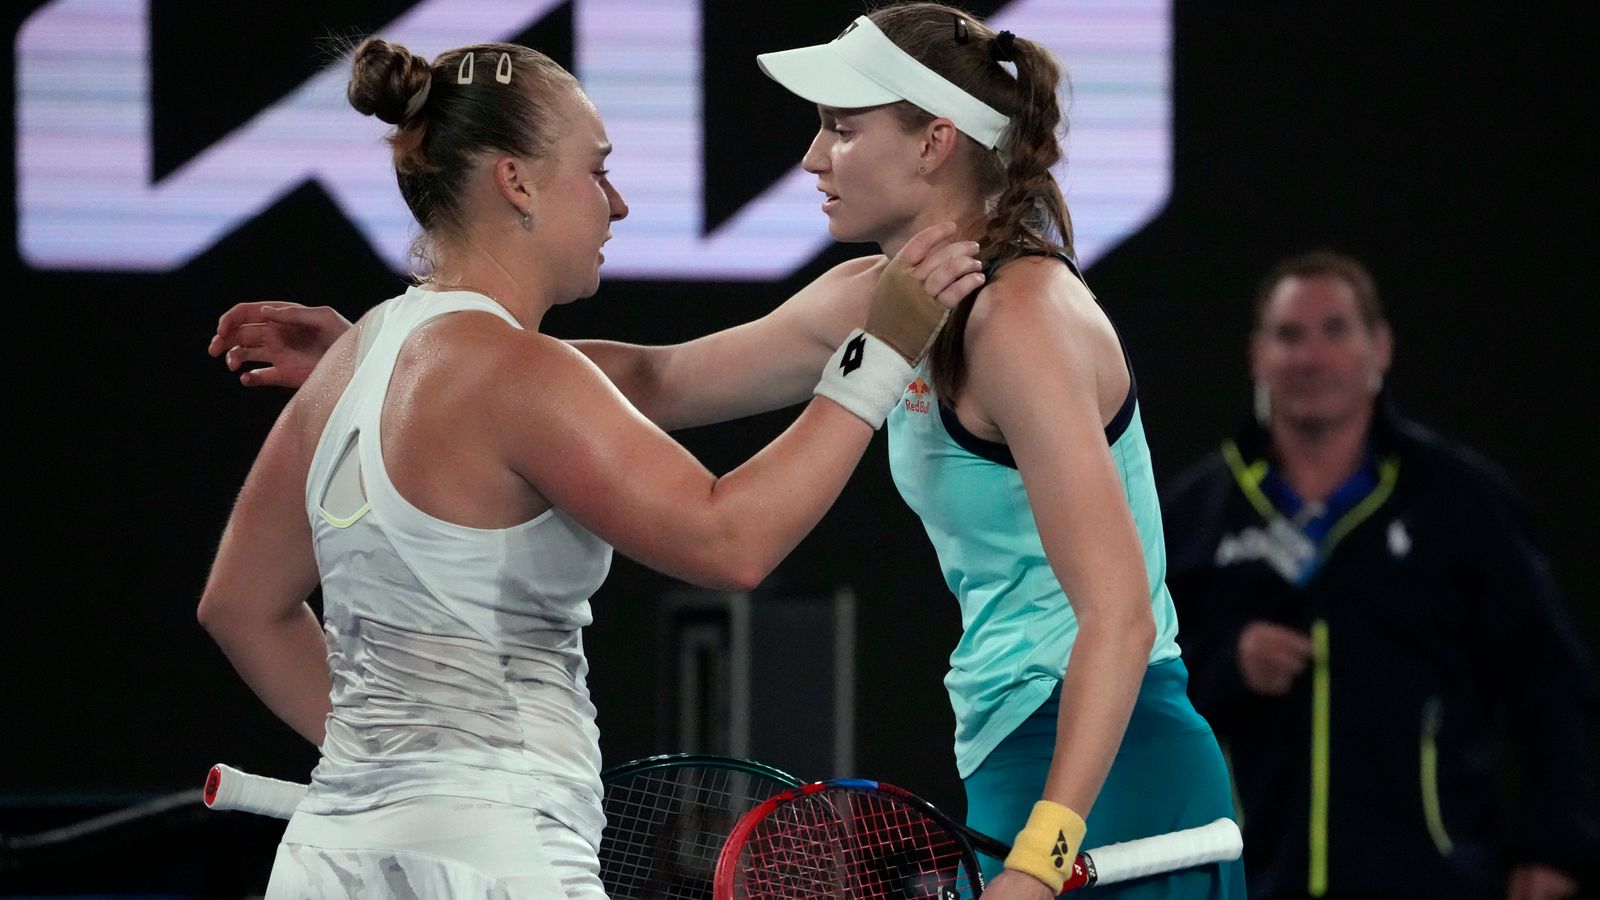 Abierto de Australia: Elena Rybakina sorprendida por Anna Blinkova en el tie-break más largo de la historia de un Grand Slam |  Noticias de tenis